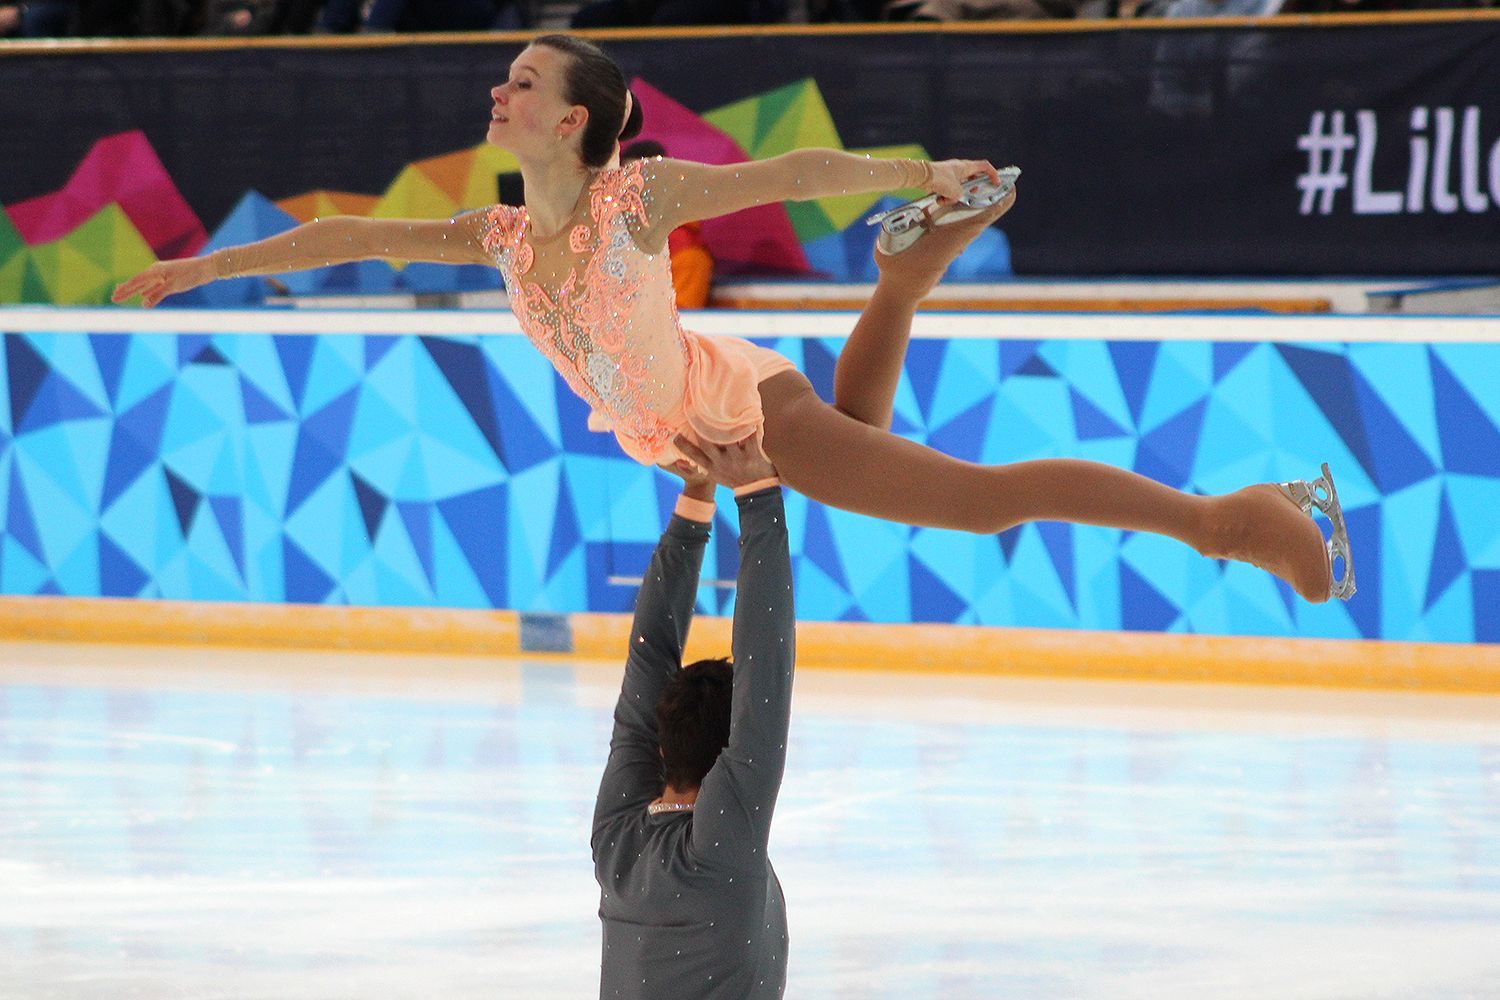 Olympiáda mládeže 2016: Martin Bidař a Anna Dušková